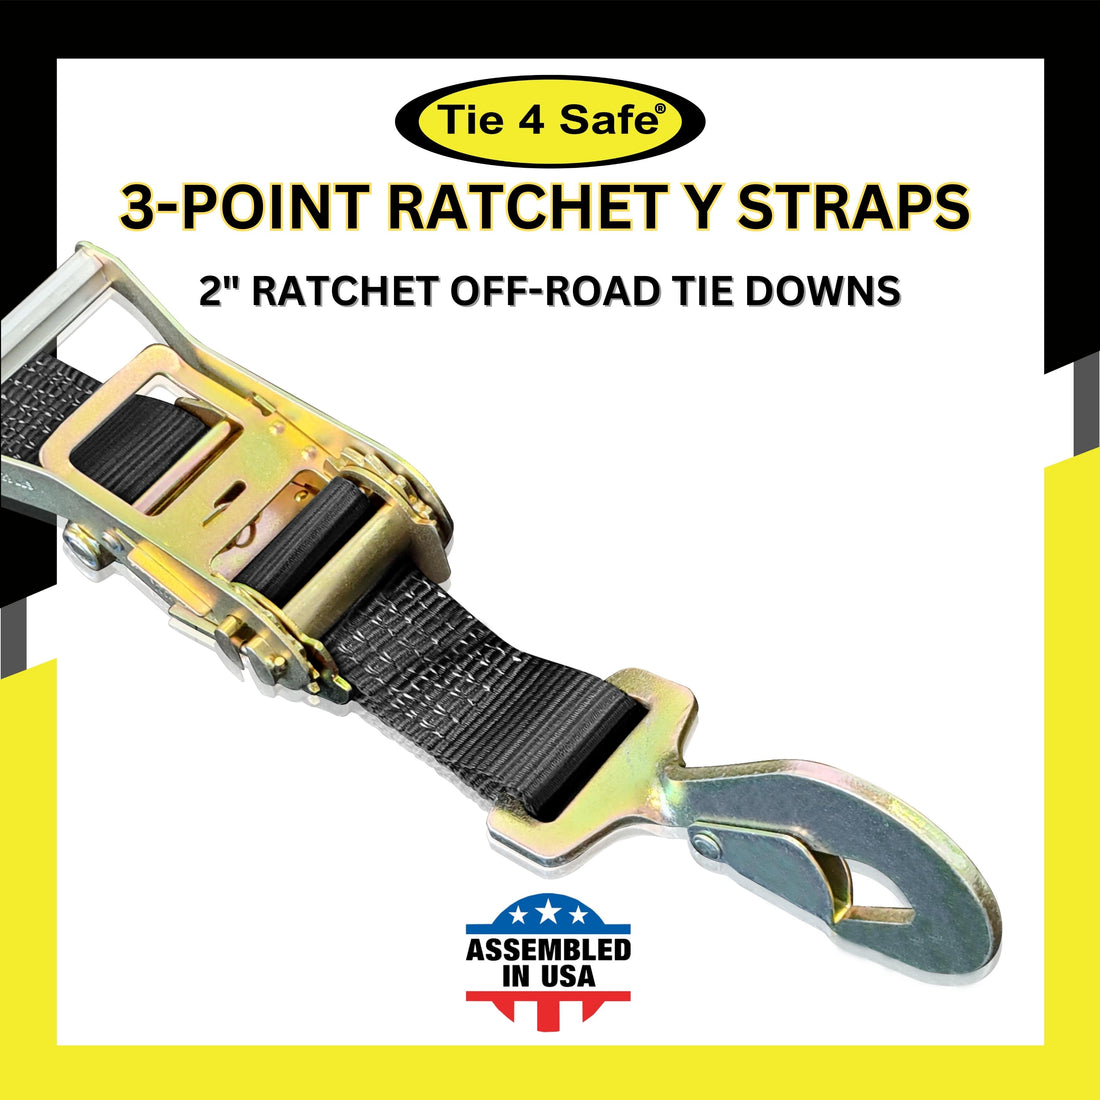 Off-Road Ratchet Straps – Tie 4 Safe